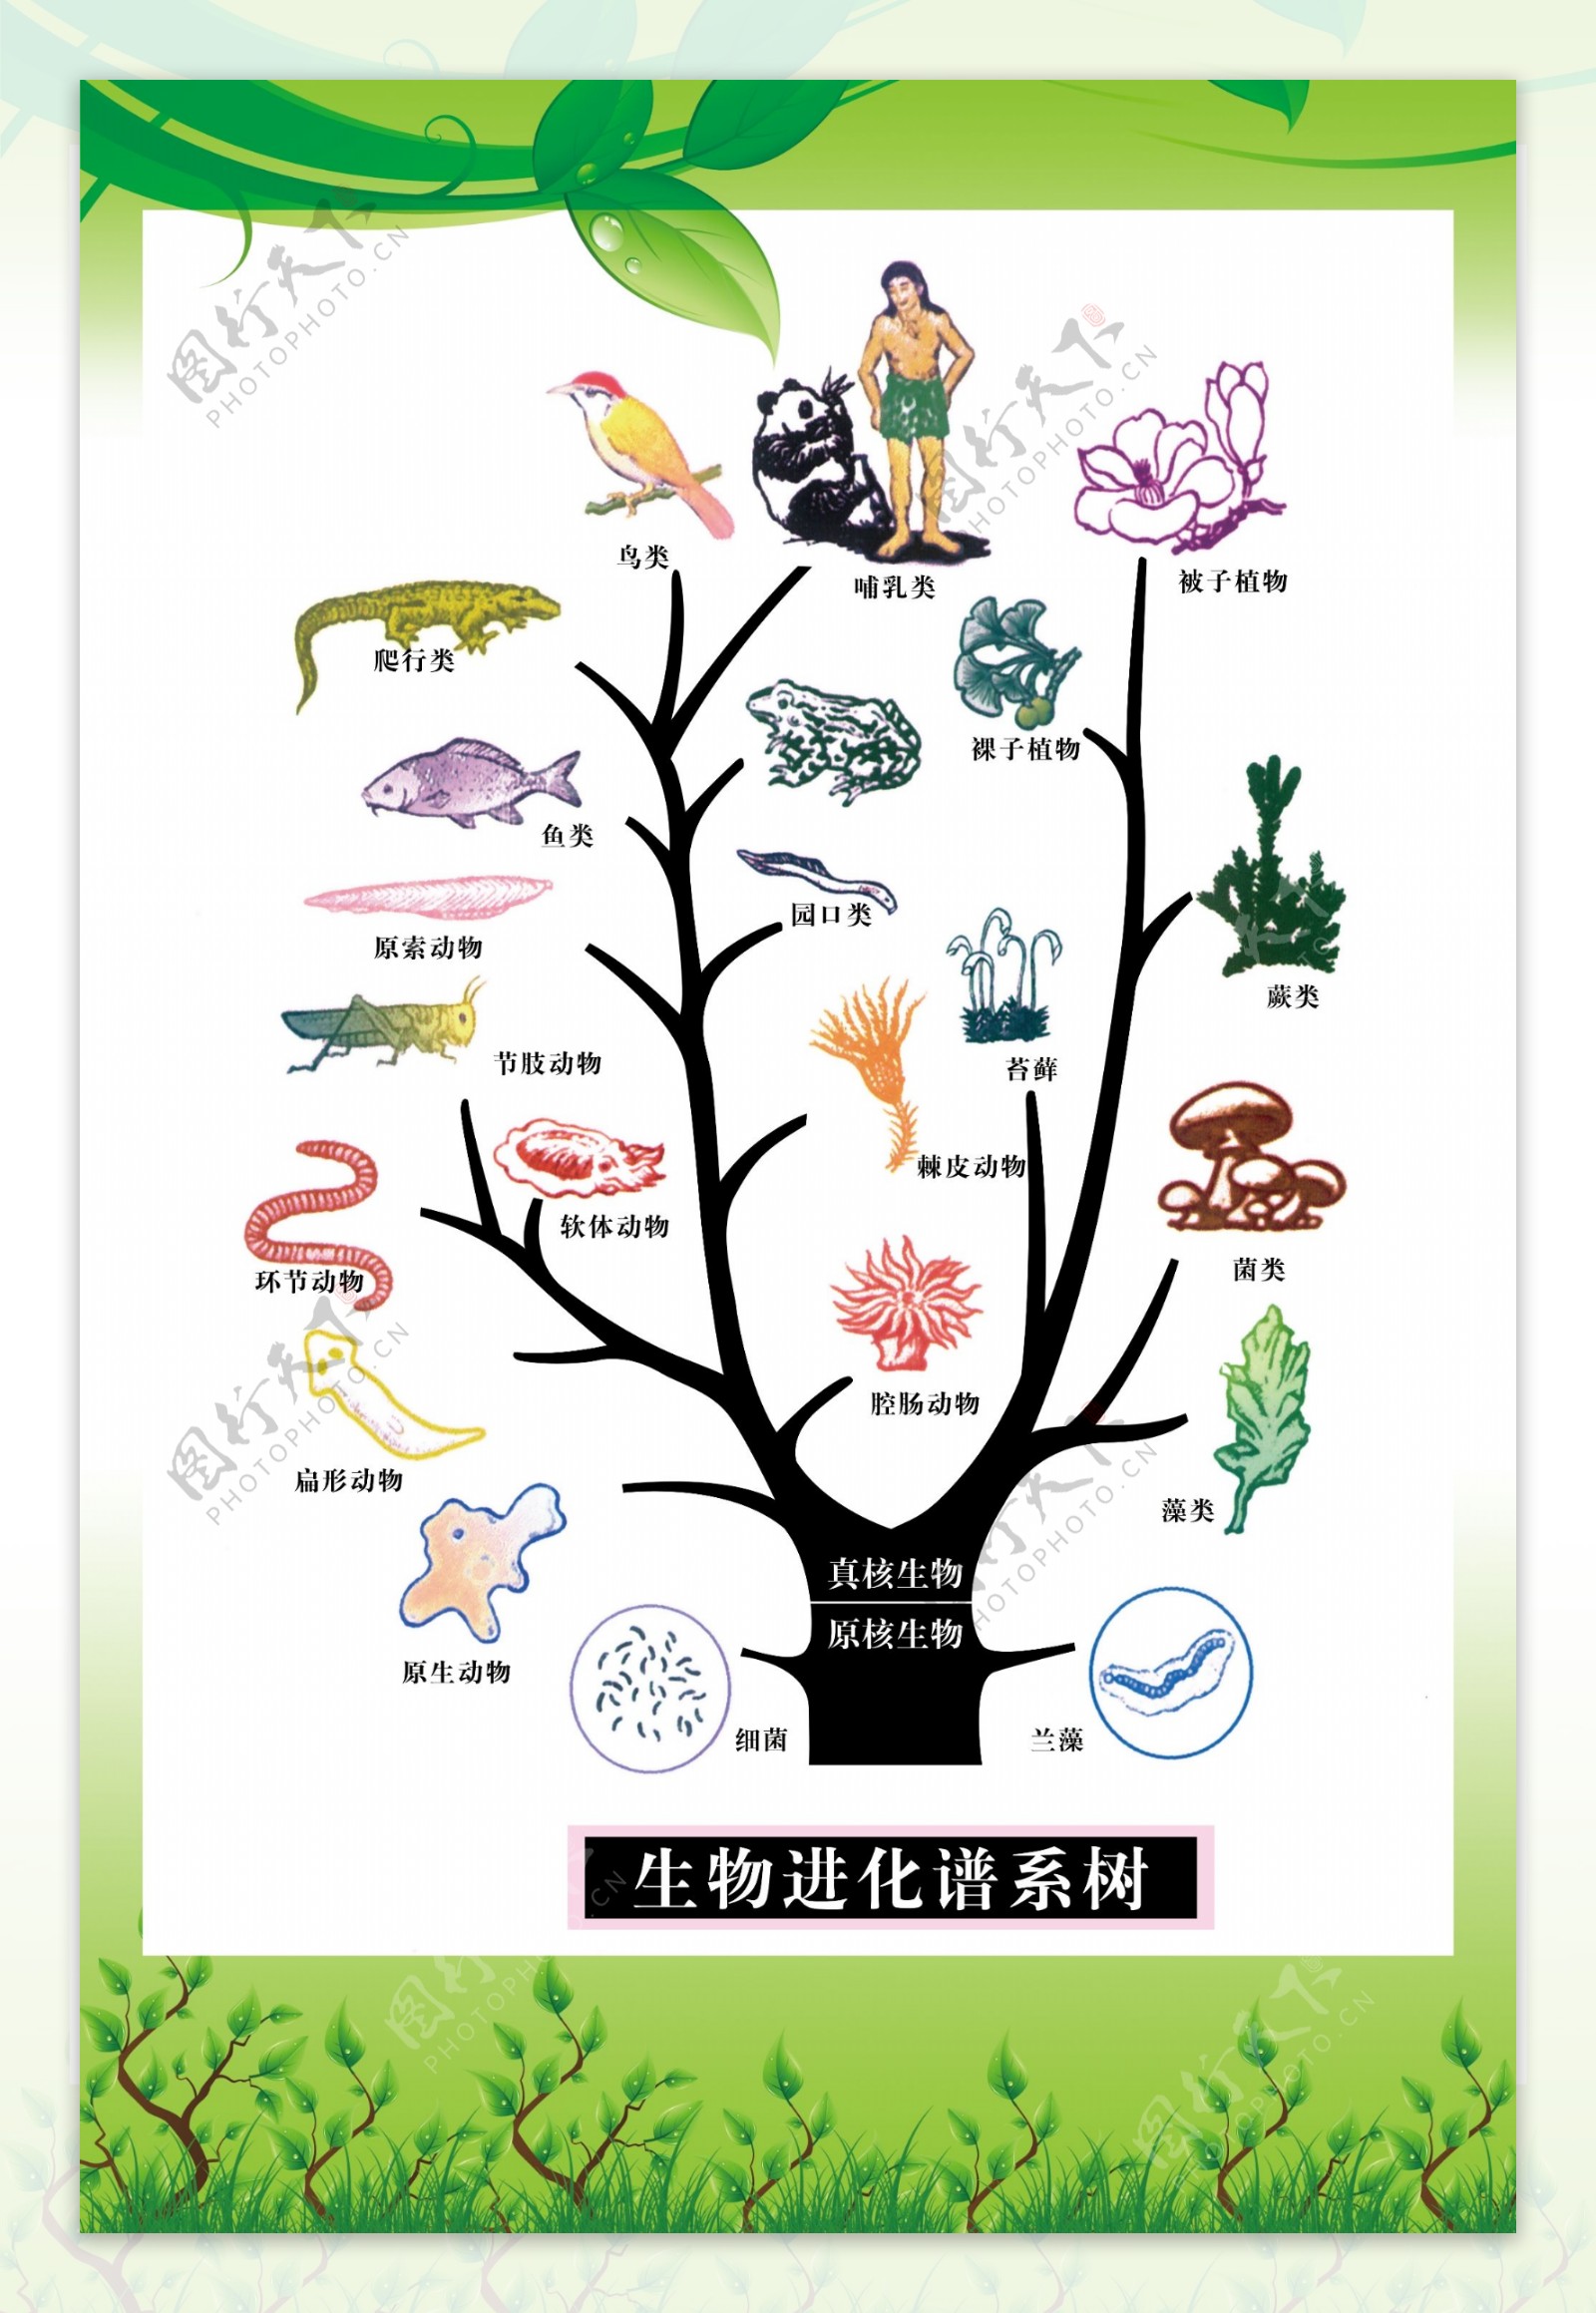 生物进化谱系树图片